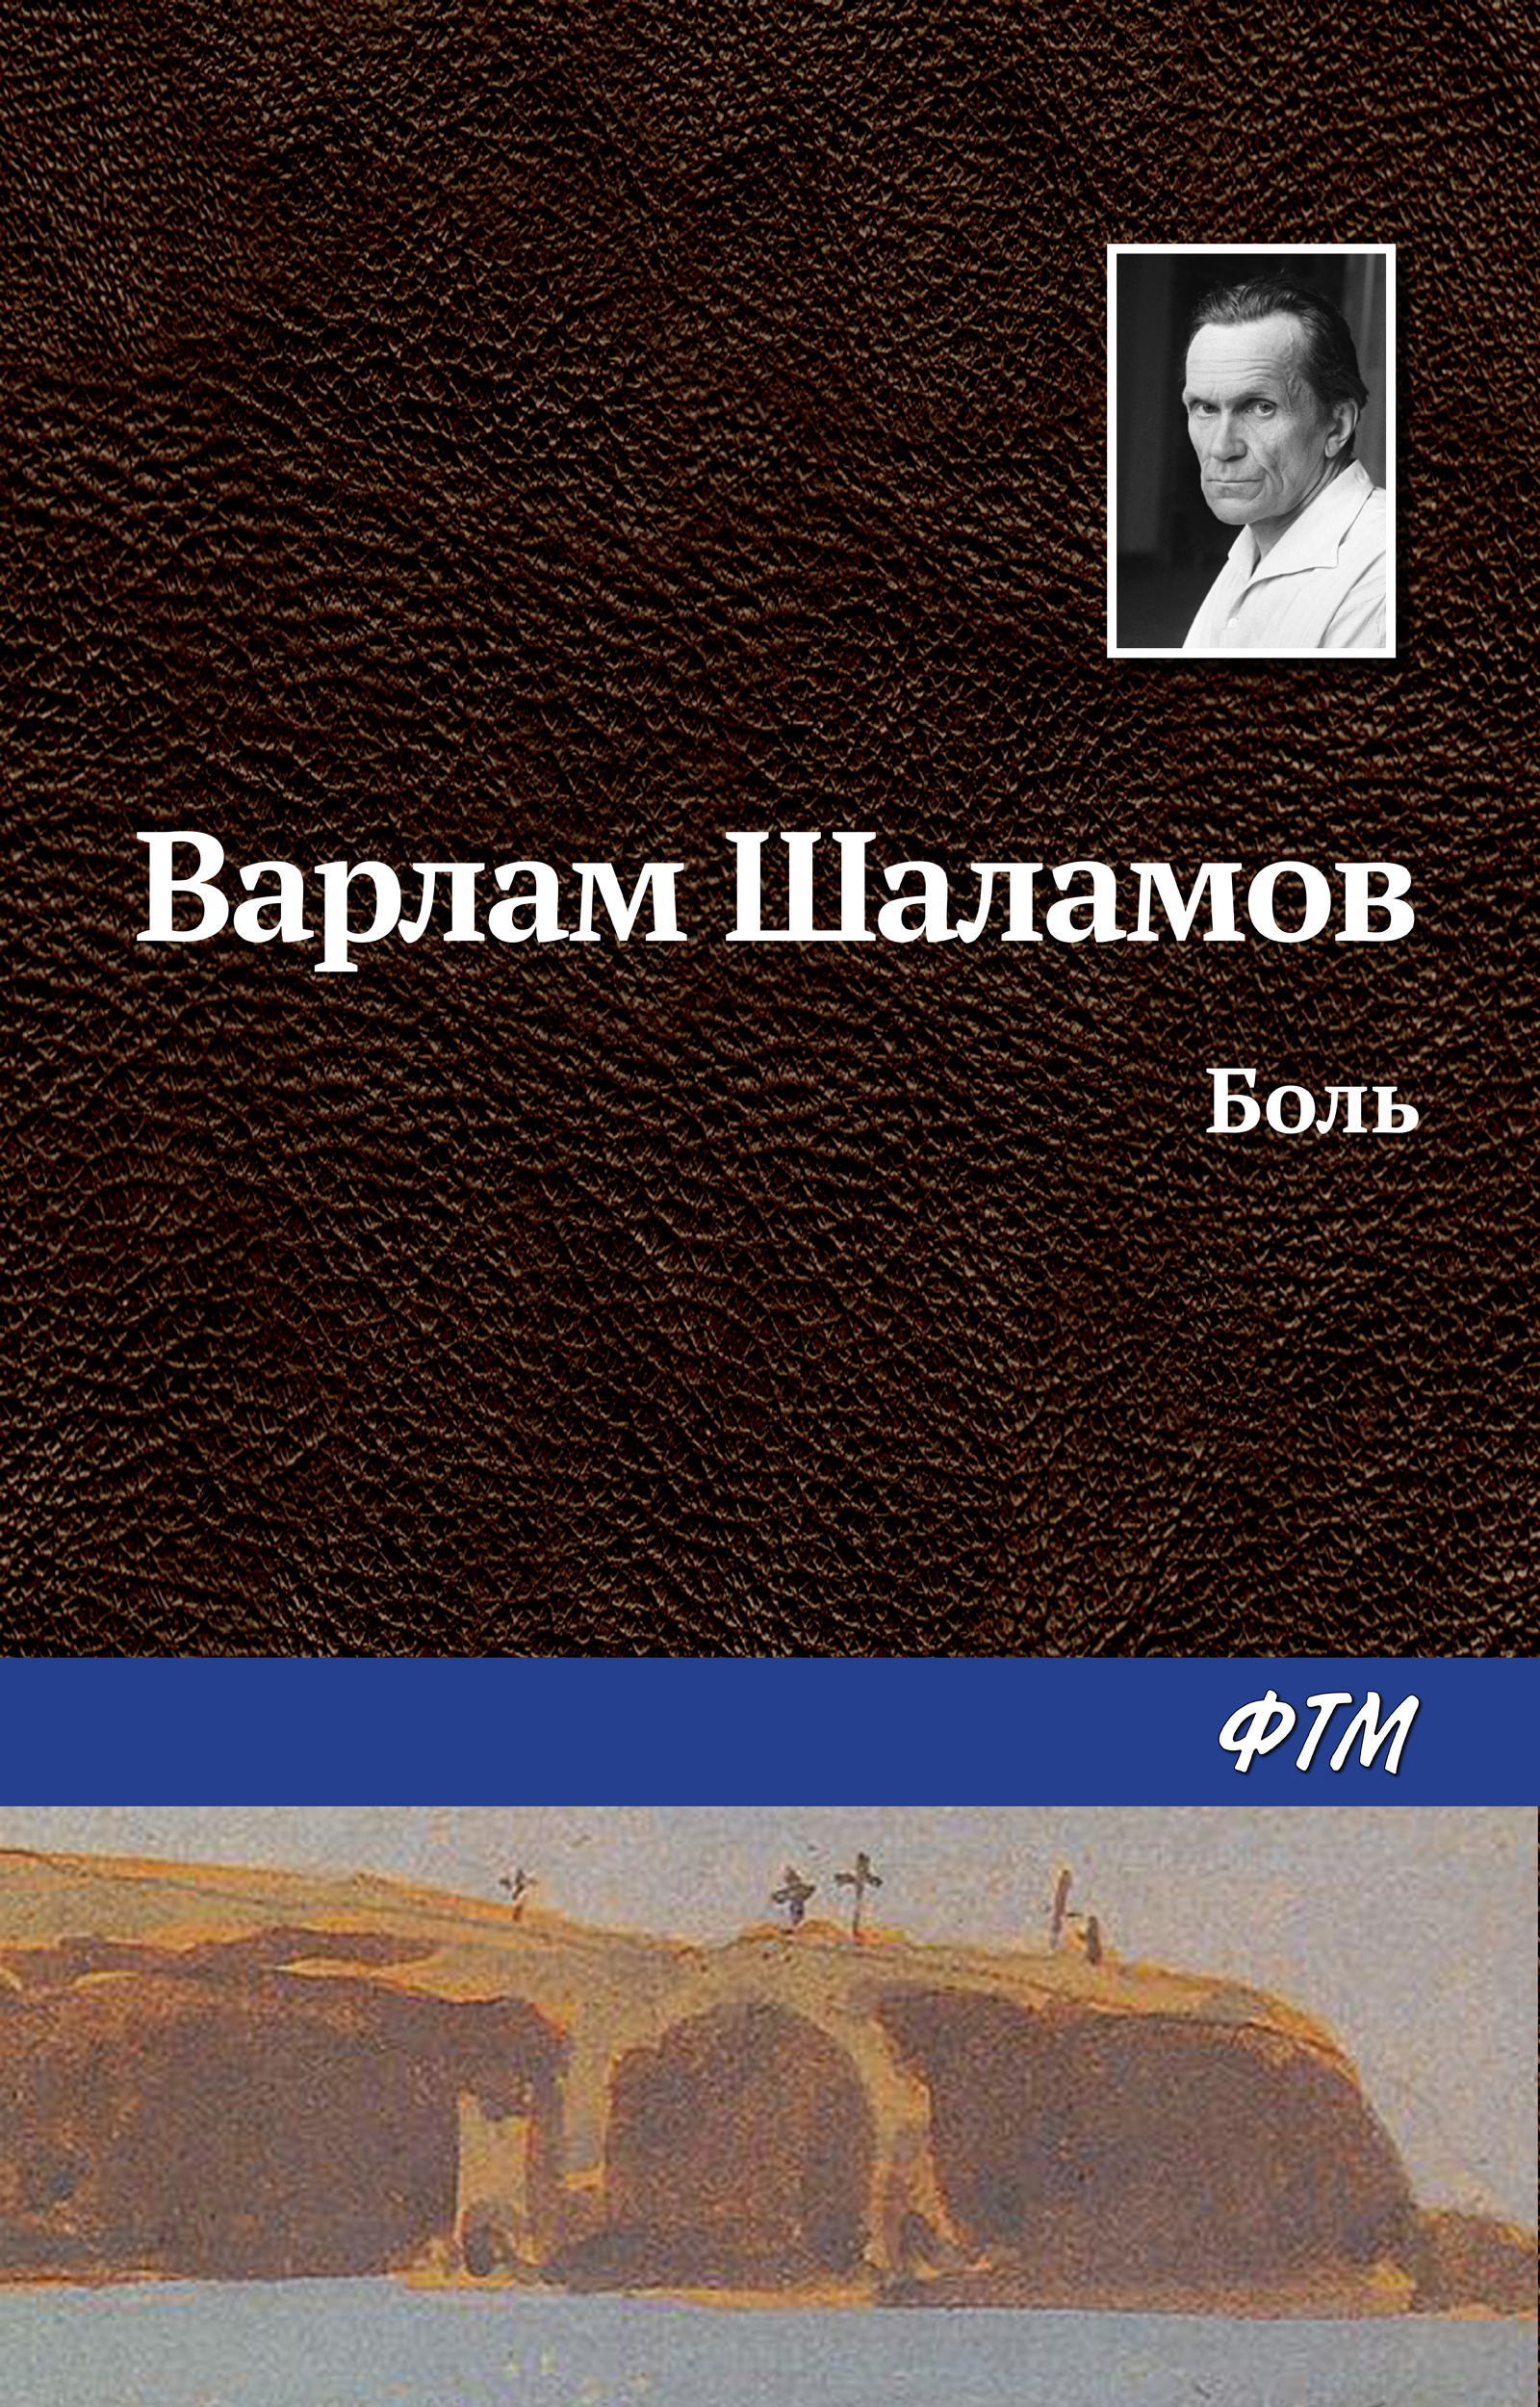 Книга Боль из серии , созданная Варлам Шаламов, может относится к жанру Русская классика. Стоимость электронной книги Боль с идентификатором 630425 составляет 19.00 руб.